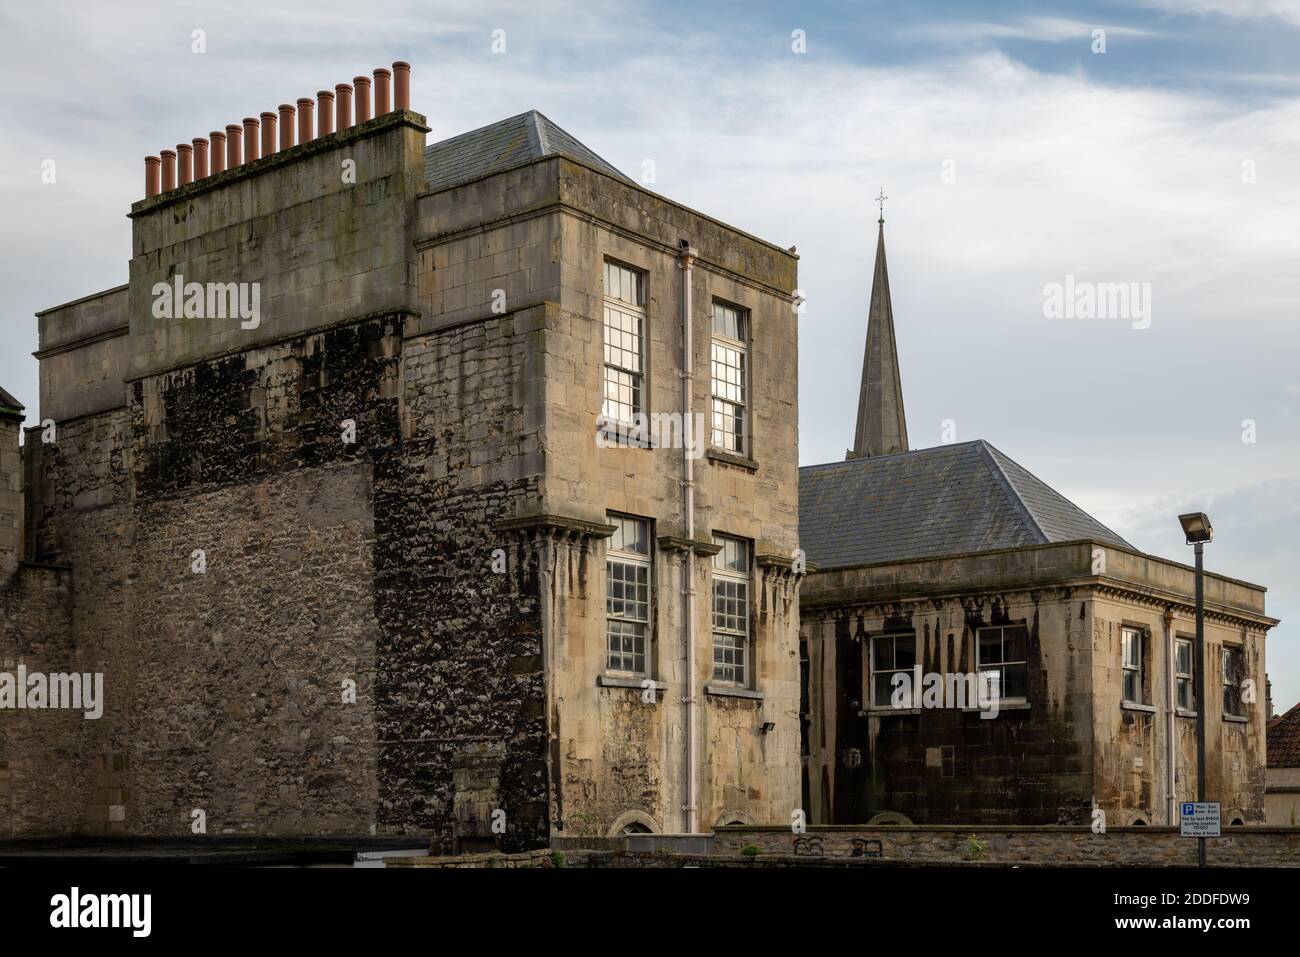 Scuola di King Edward, Broad Street, Bath Foto Stock